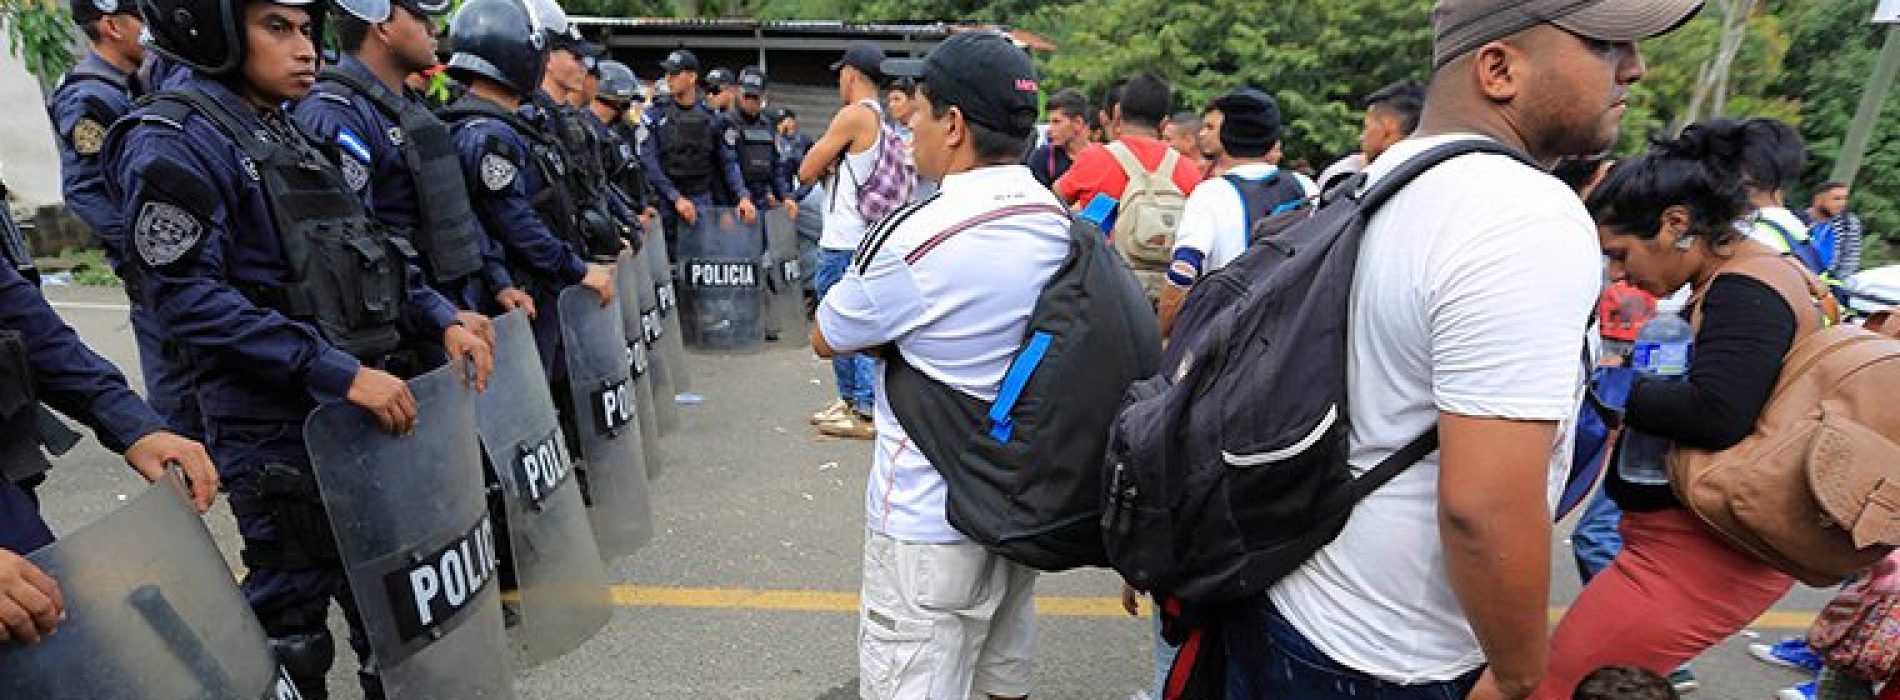 Guardia Nacional y migrantes chocan en frontera con Guatemala